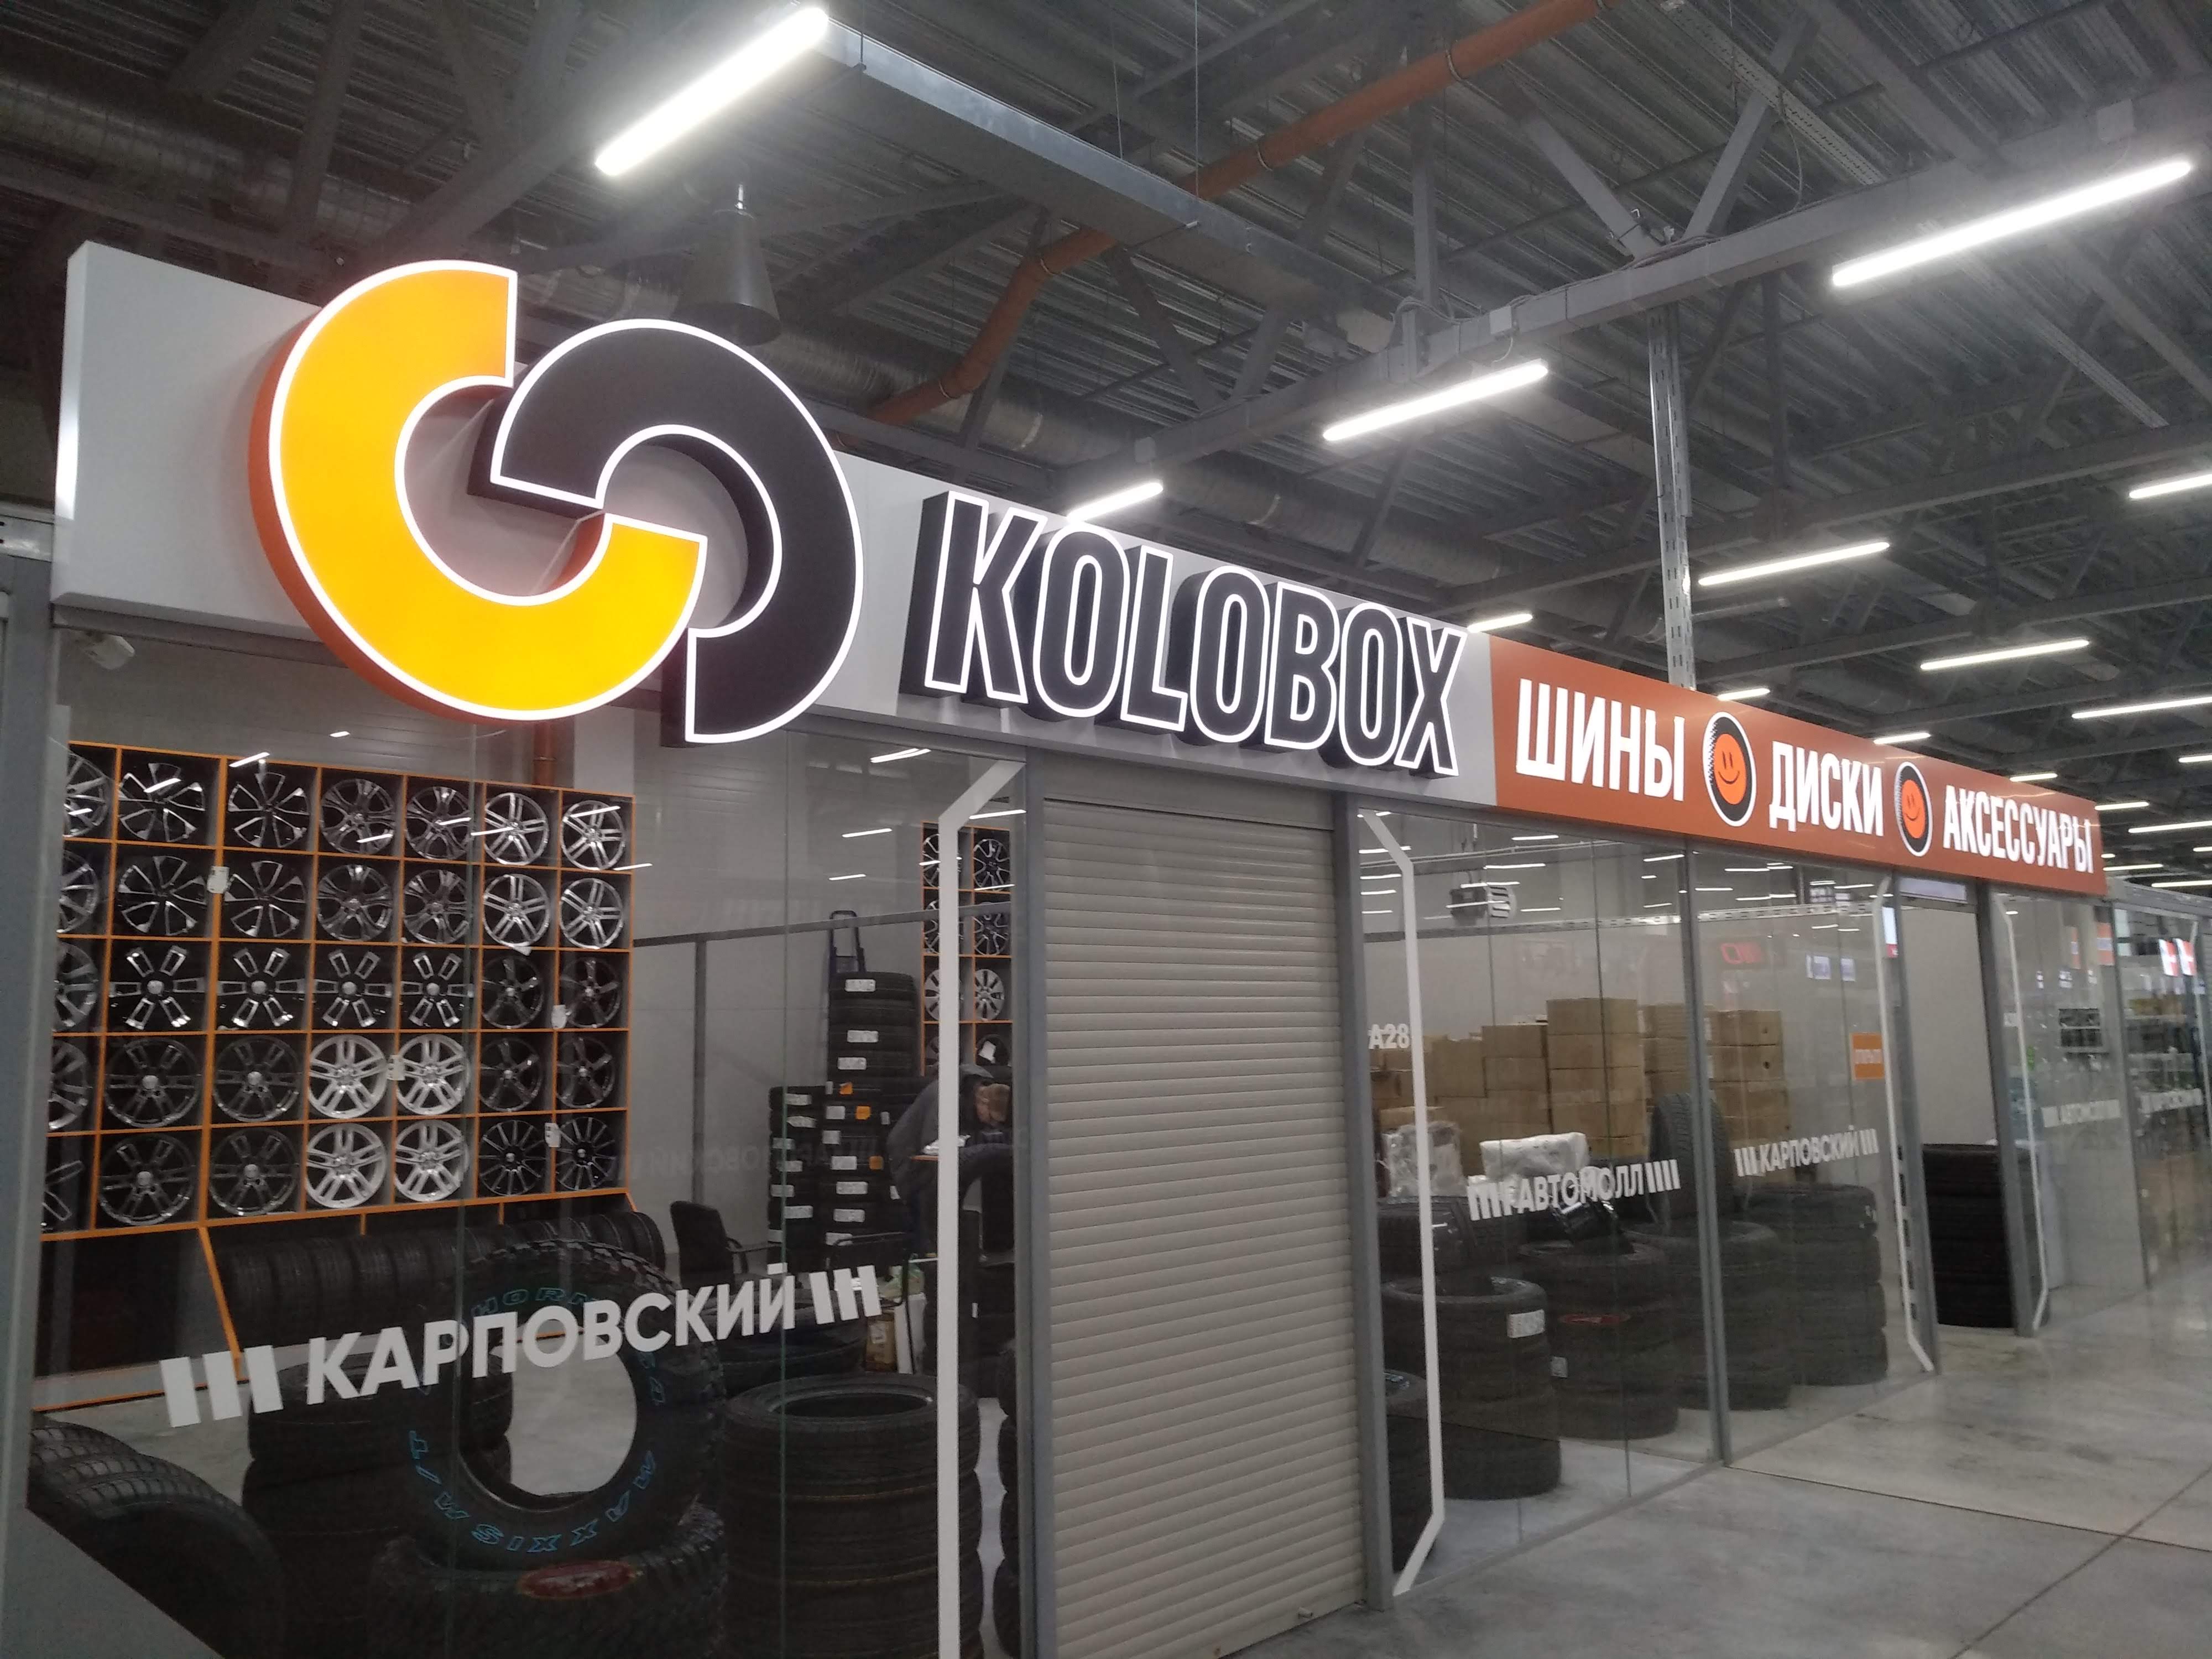 Новый ТСЦ KOLOBOX в Нижнем Новгороде - ТЦ АВТОМОЛЛ, Суздальская, 70